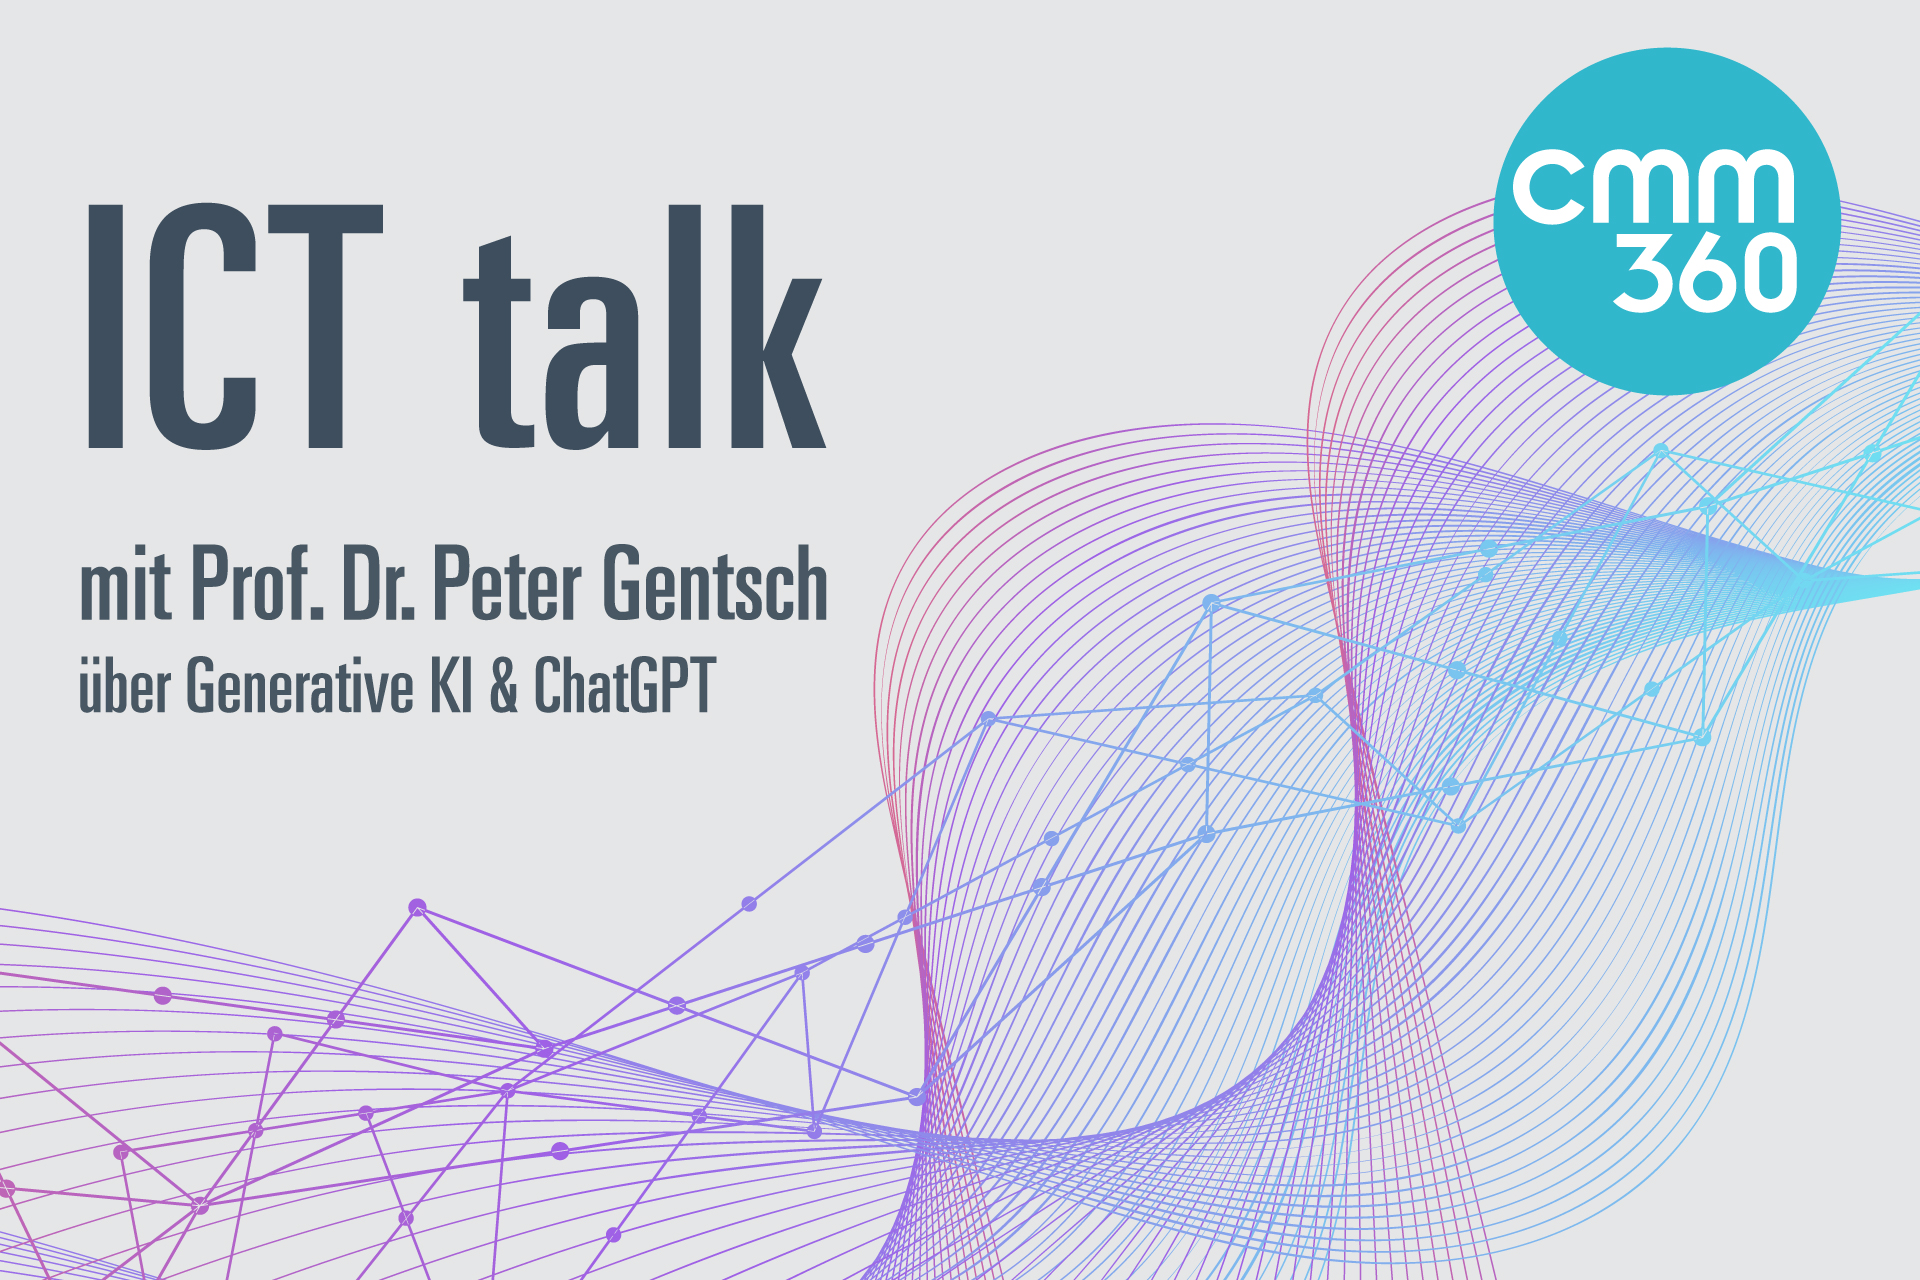 Podcast über Generative KI & die Demokratisierung von Wissen_cmm360_ICT Talk_Peter Gentasch